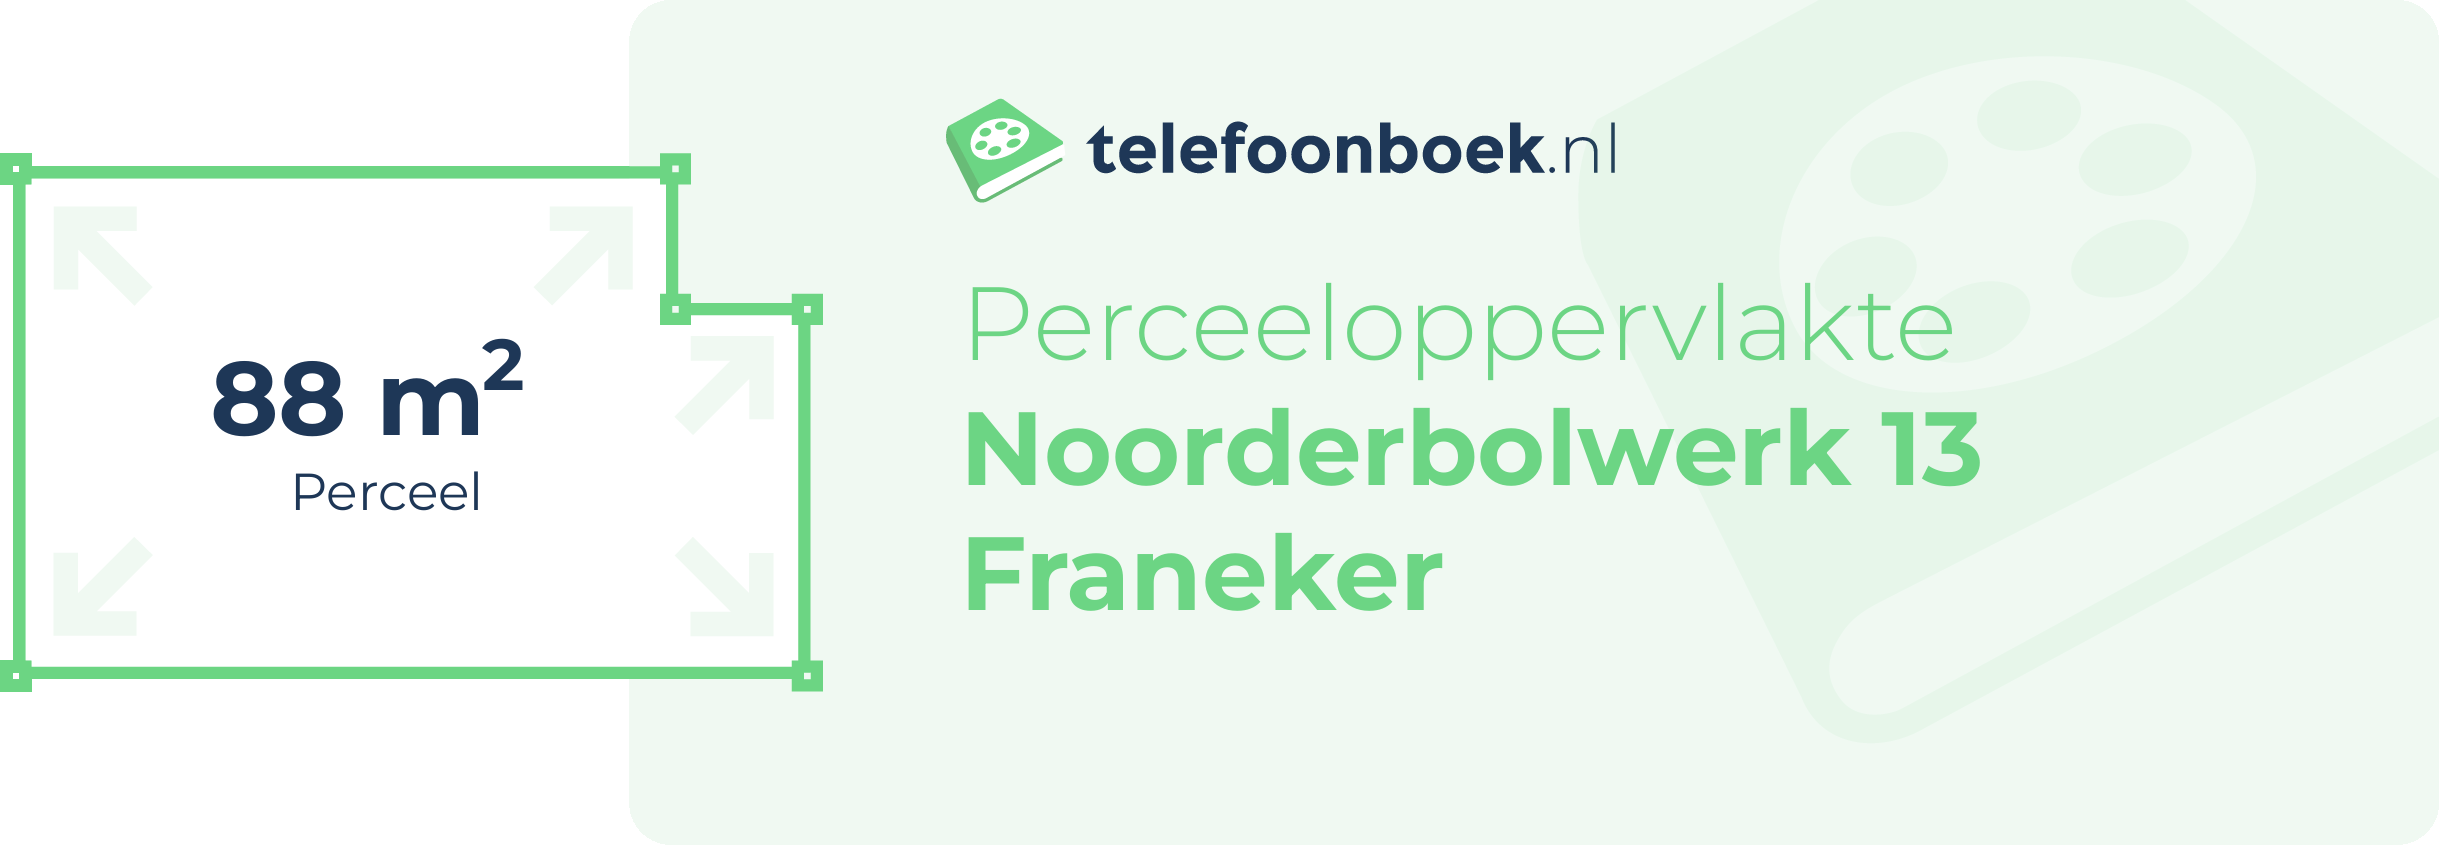 Perceeloppervlakte Noorderbolwerk 13 Franeker